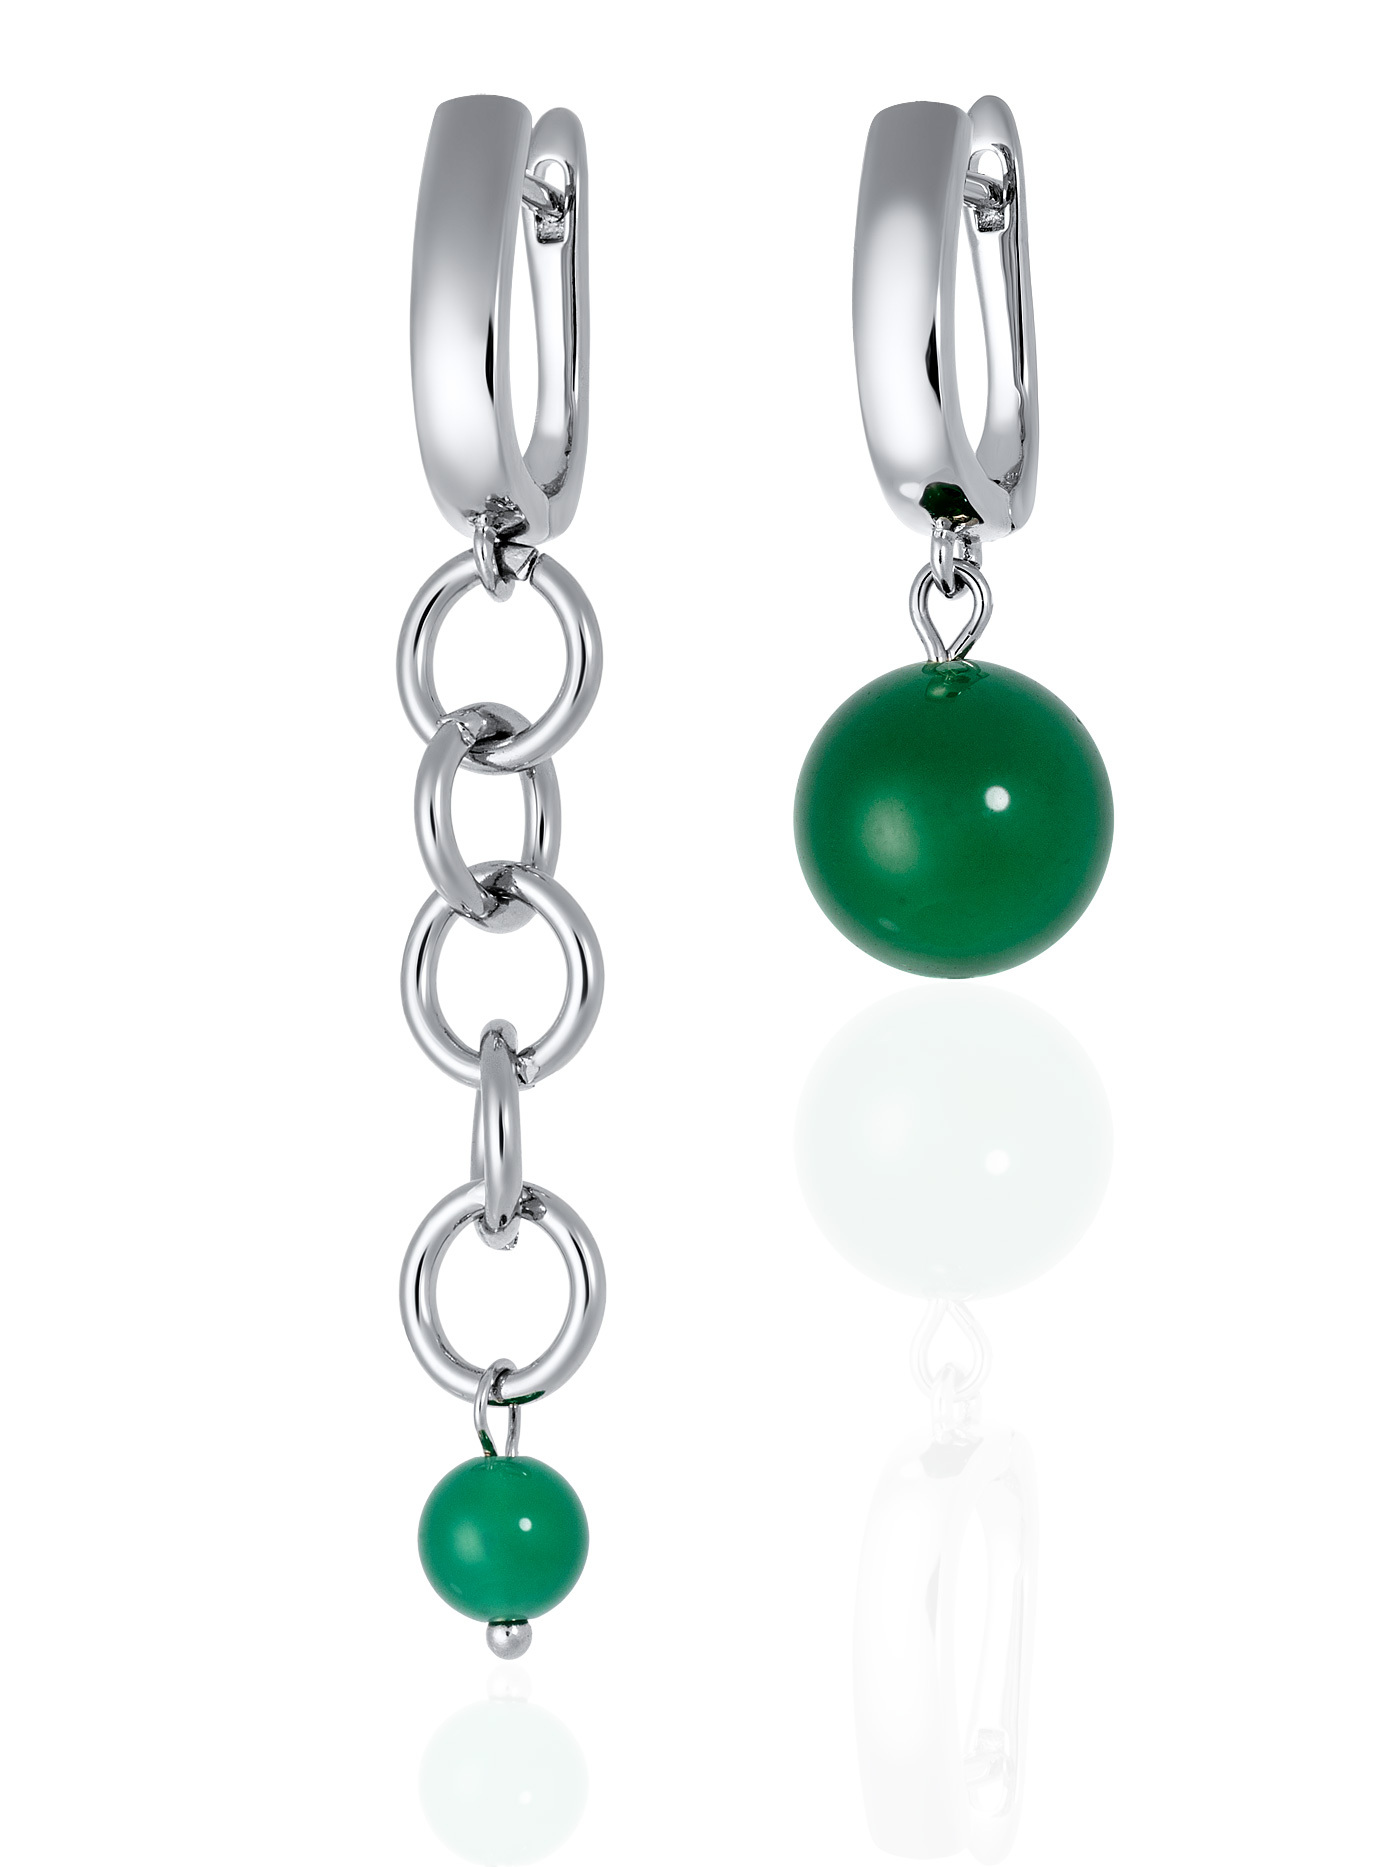 Асимметричные непарные дизайнерские серьги с натуральными камнями - зеленым агатом